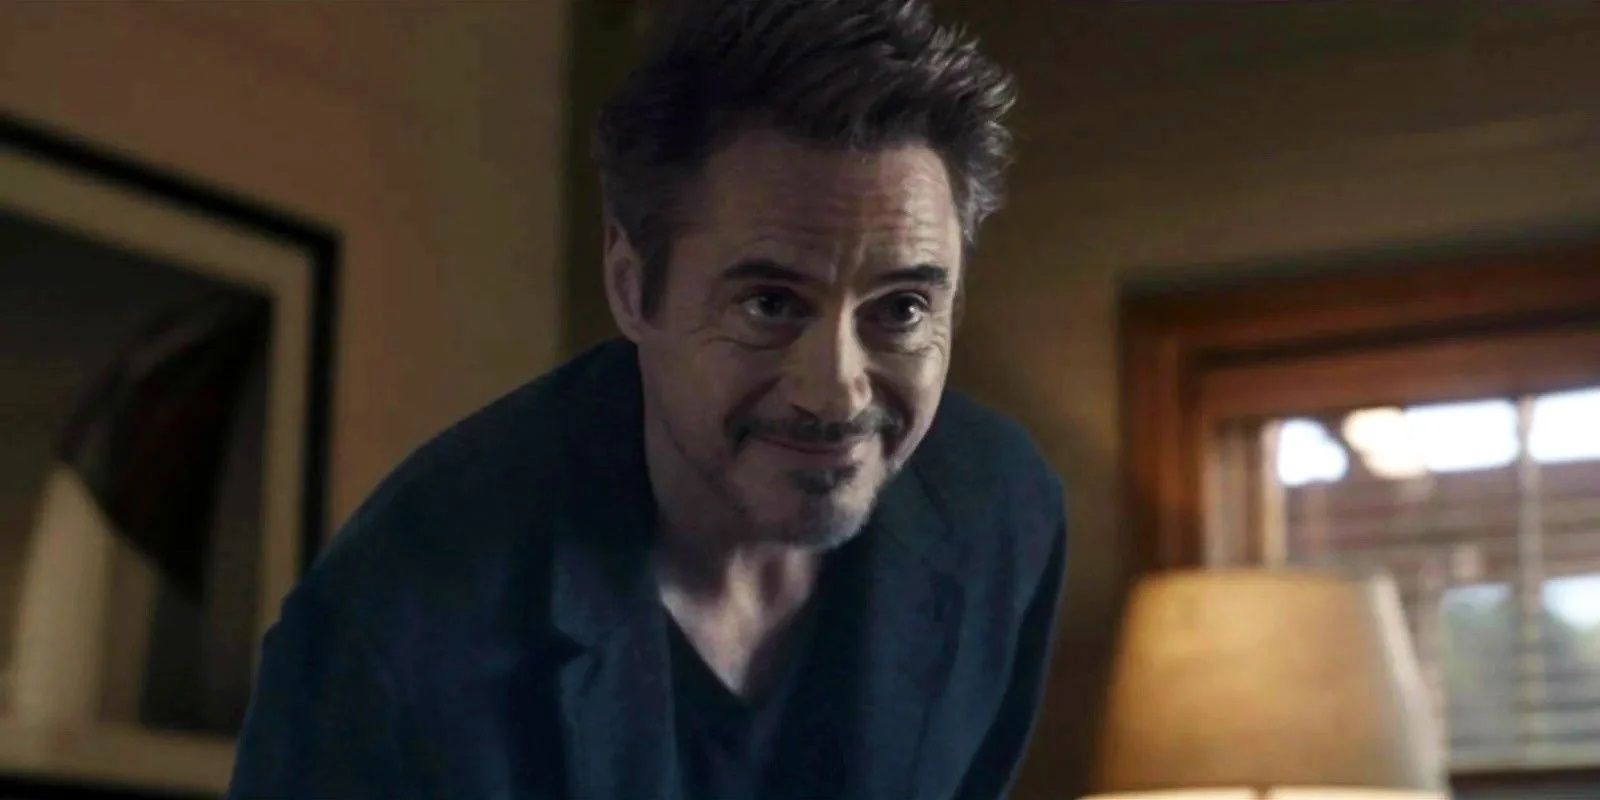 Robert Downey Jr in Avengers Endgame